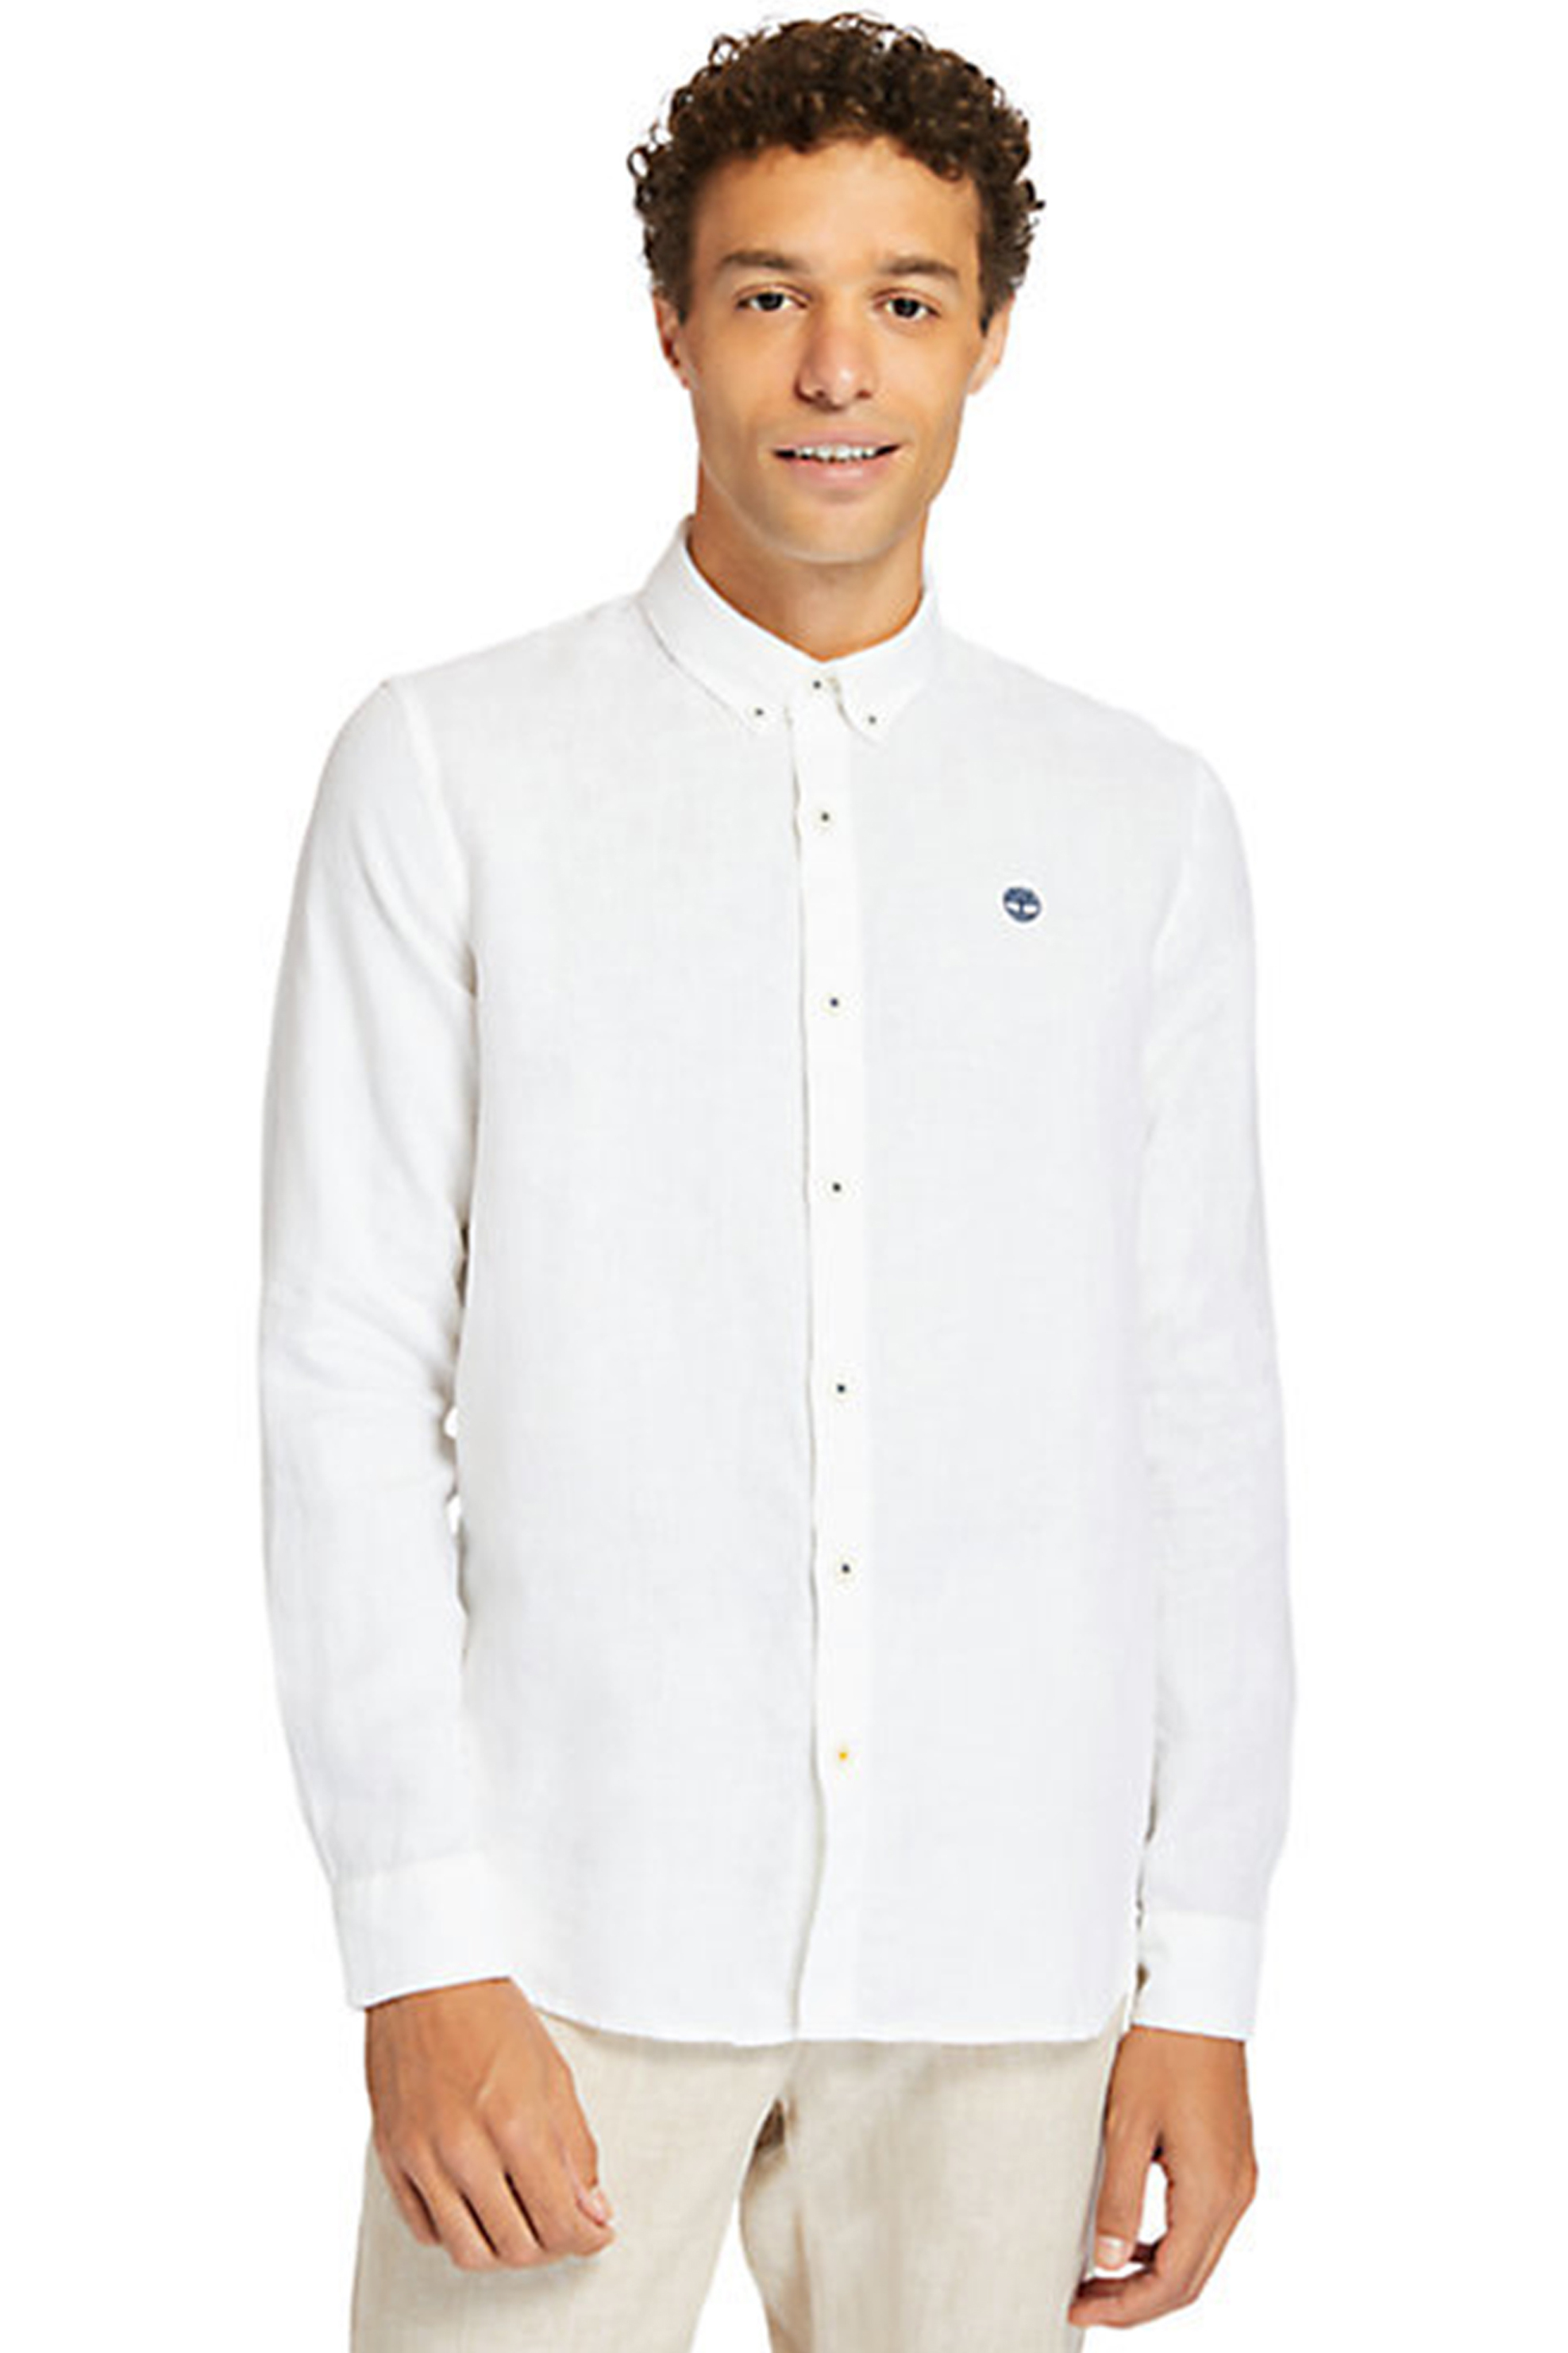 Ανδρική Μόδα > Ανδρικά Ρούχα > Ανδρικά Πουκάμισα > Ανδρικά Πουκάμισα Casual Timberland ανδρικό λινό πουκάμισο ''Mill River'' - TB0A2DC31001 Λευκό